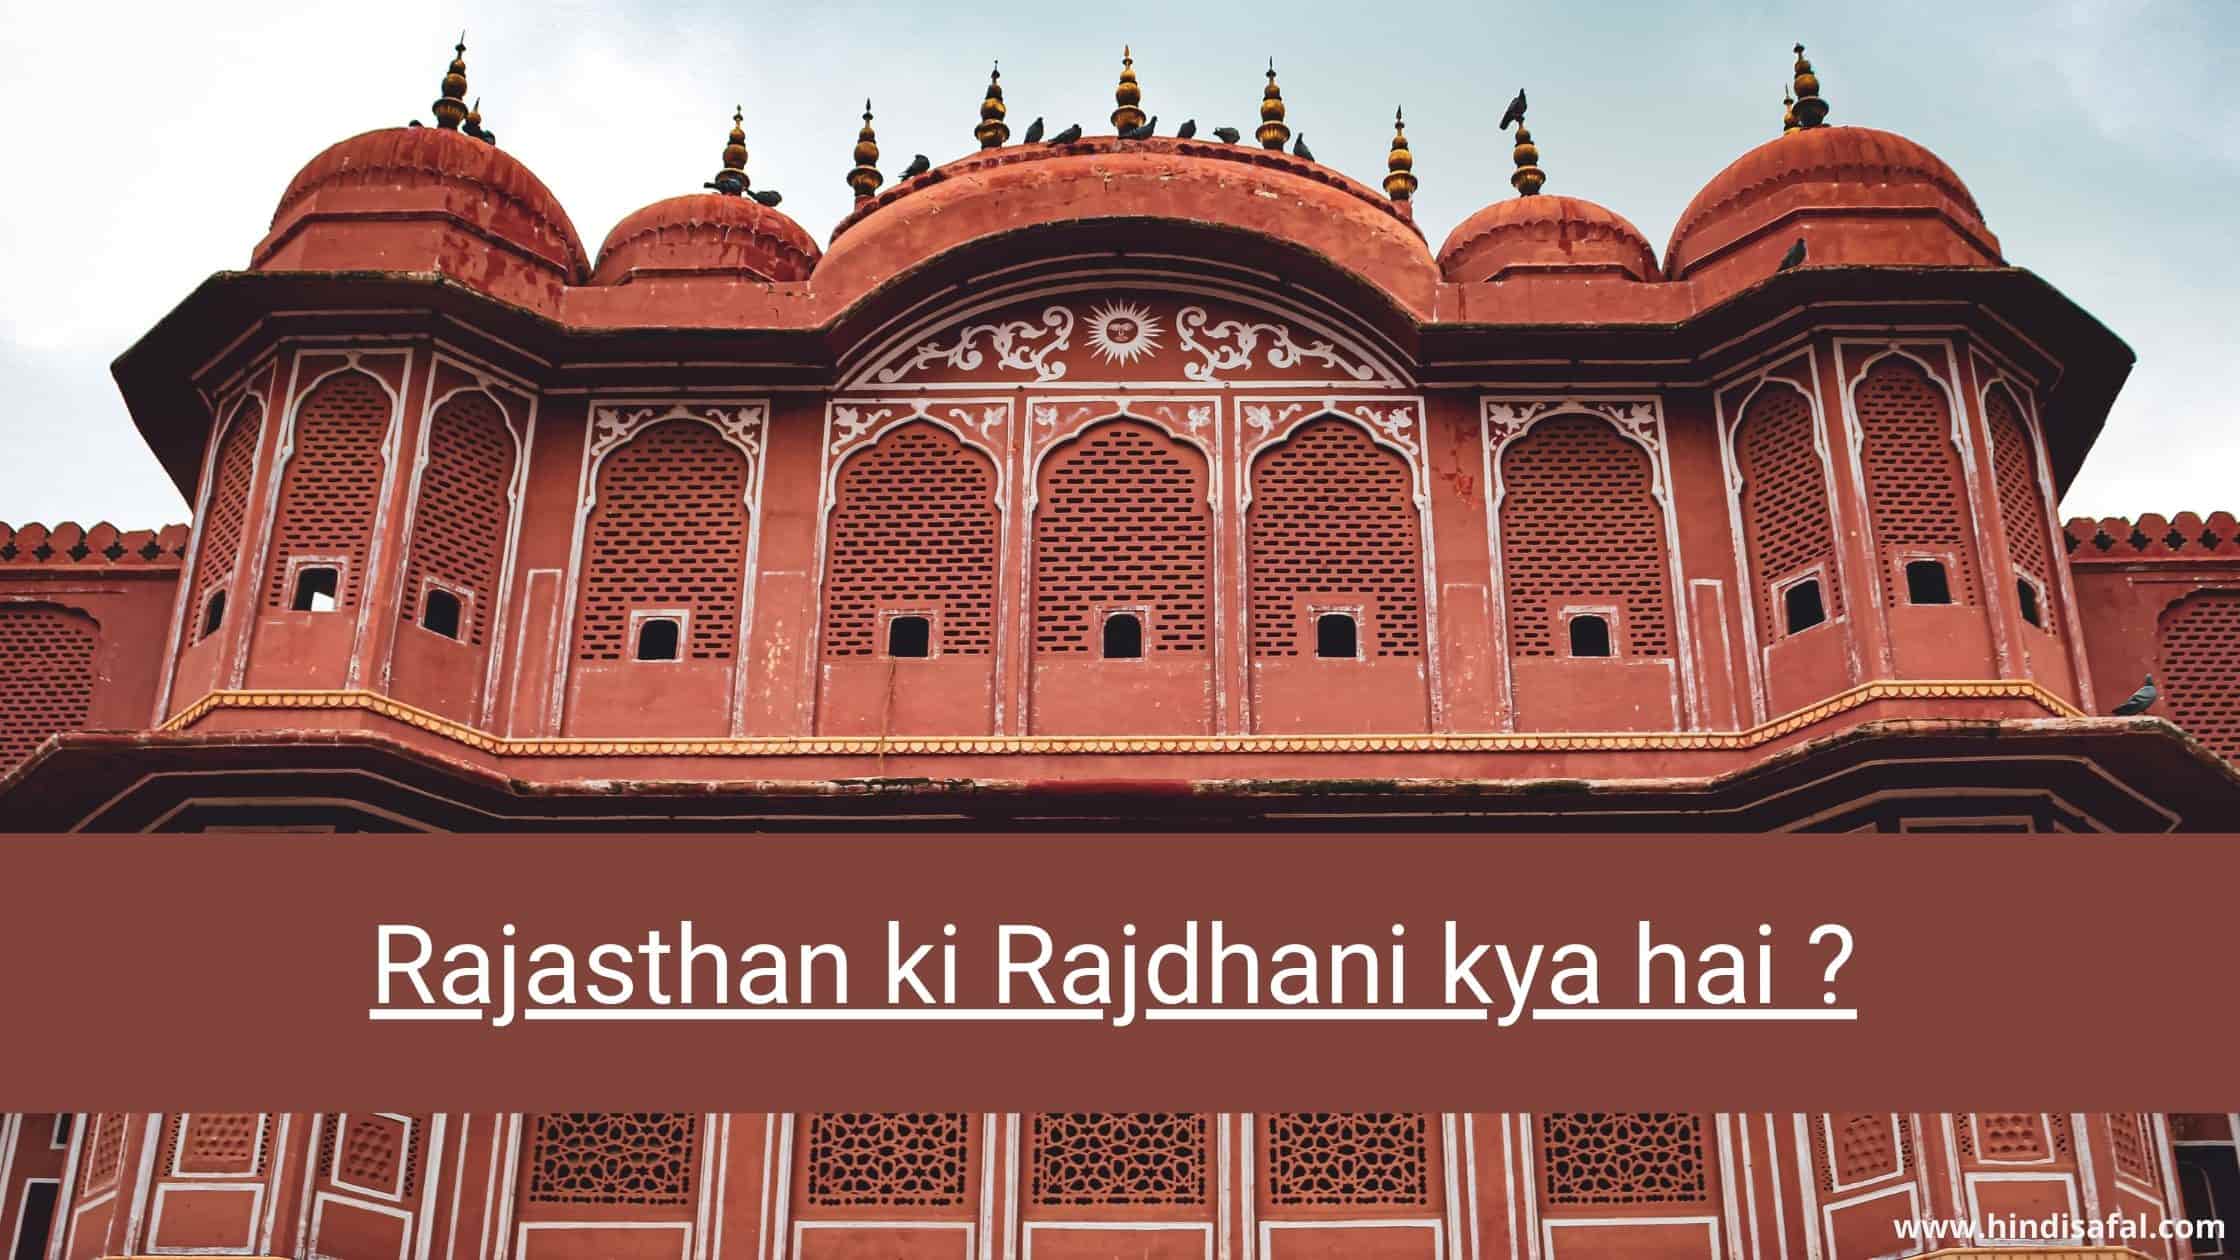 Rajasthan ki Rajdhani kya hai ?